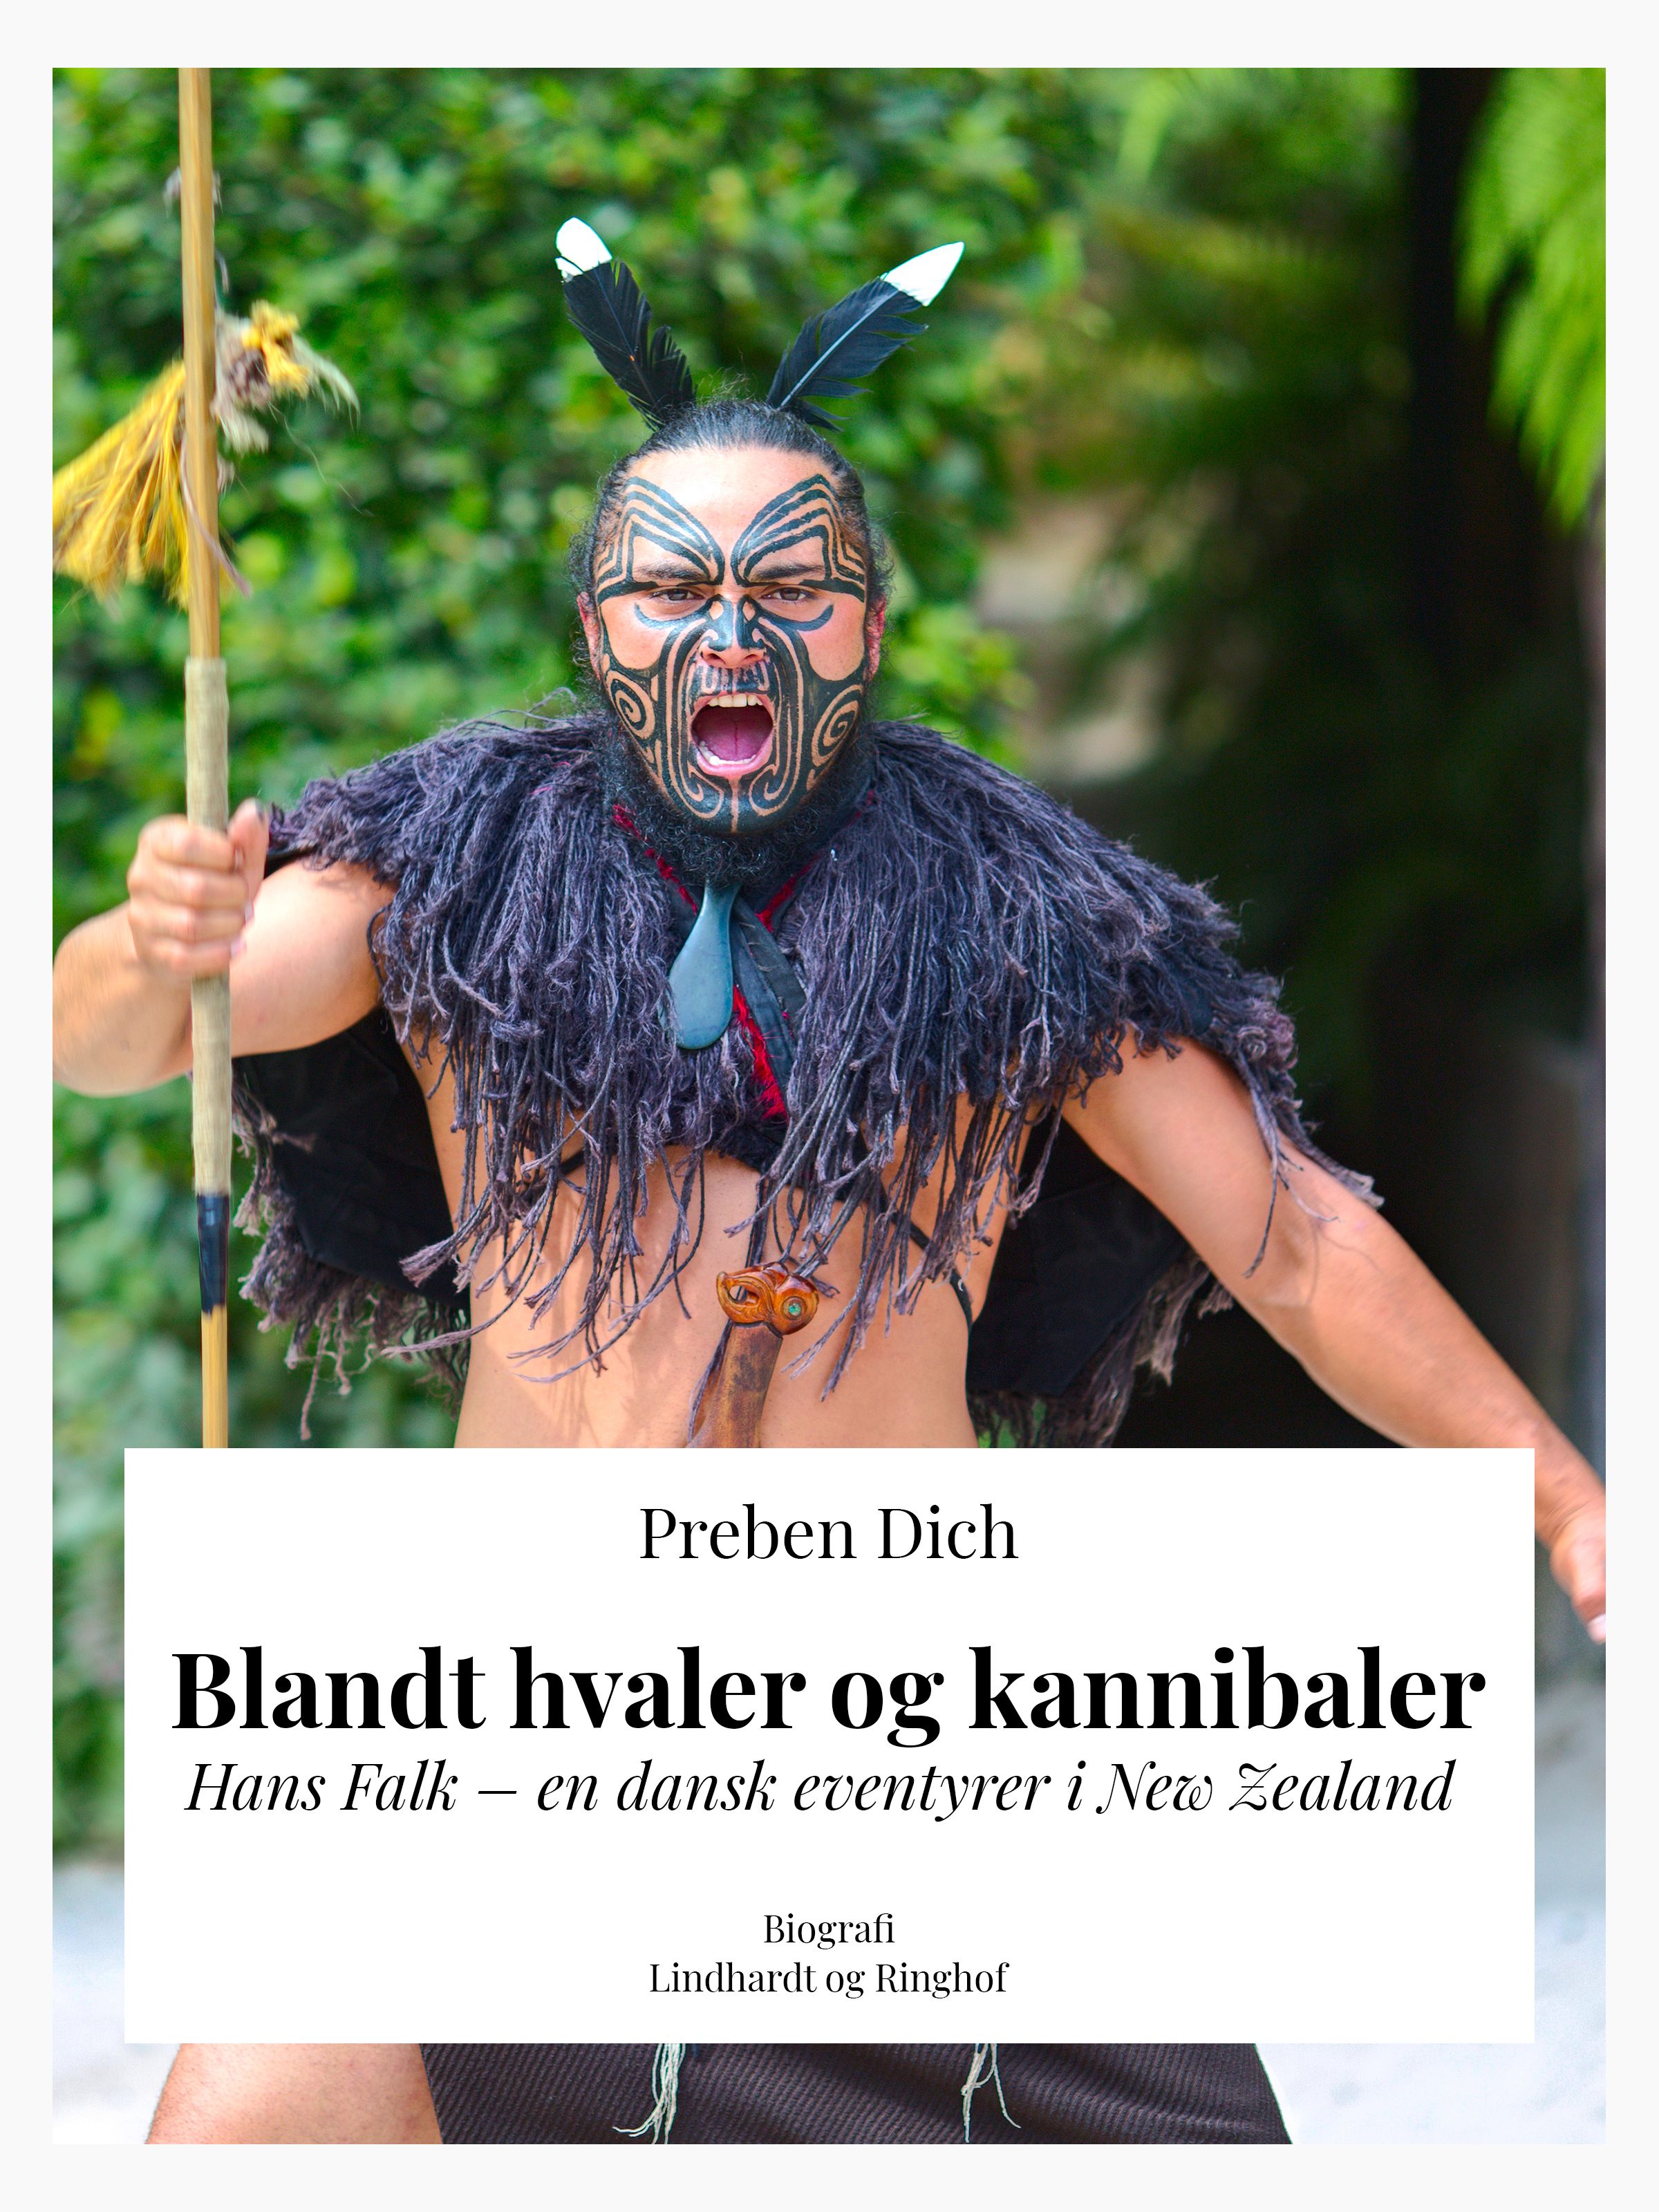 Blandt hvaler og kannibaler. Hans Falk – en dansk eventyrer i New Zealand, e-bok av Preben Helsted Dich